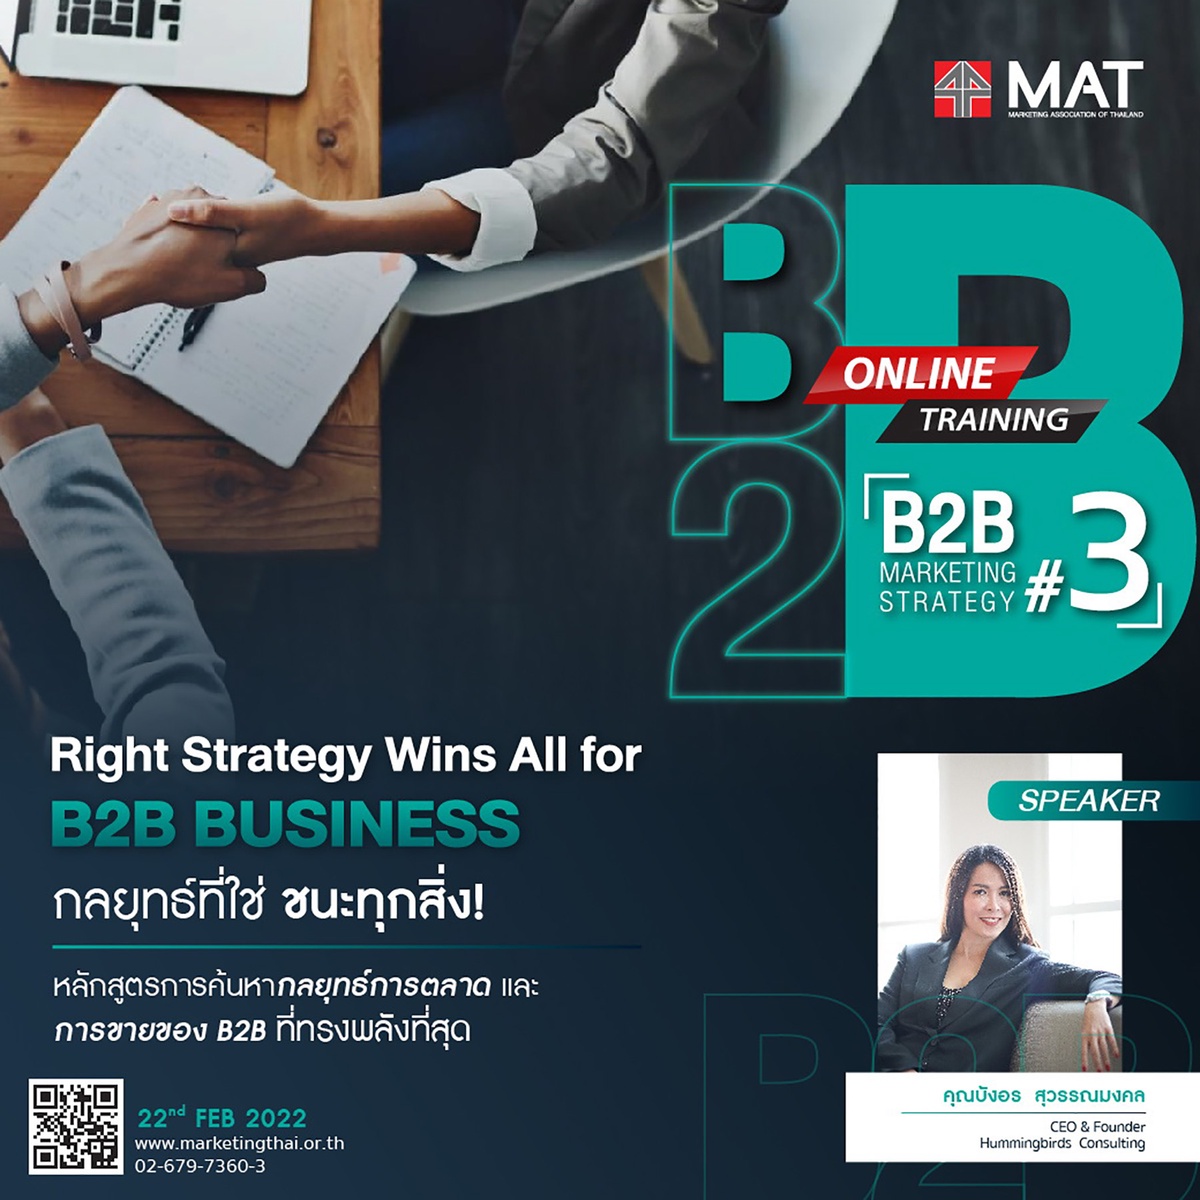 สมาคมการตลาดแห่งประเทศไทยจัดหลักสูตร B2B Marketing Strategy รุ่นที่ 3 - Online Training